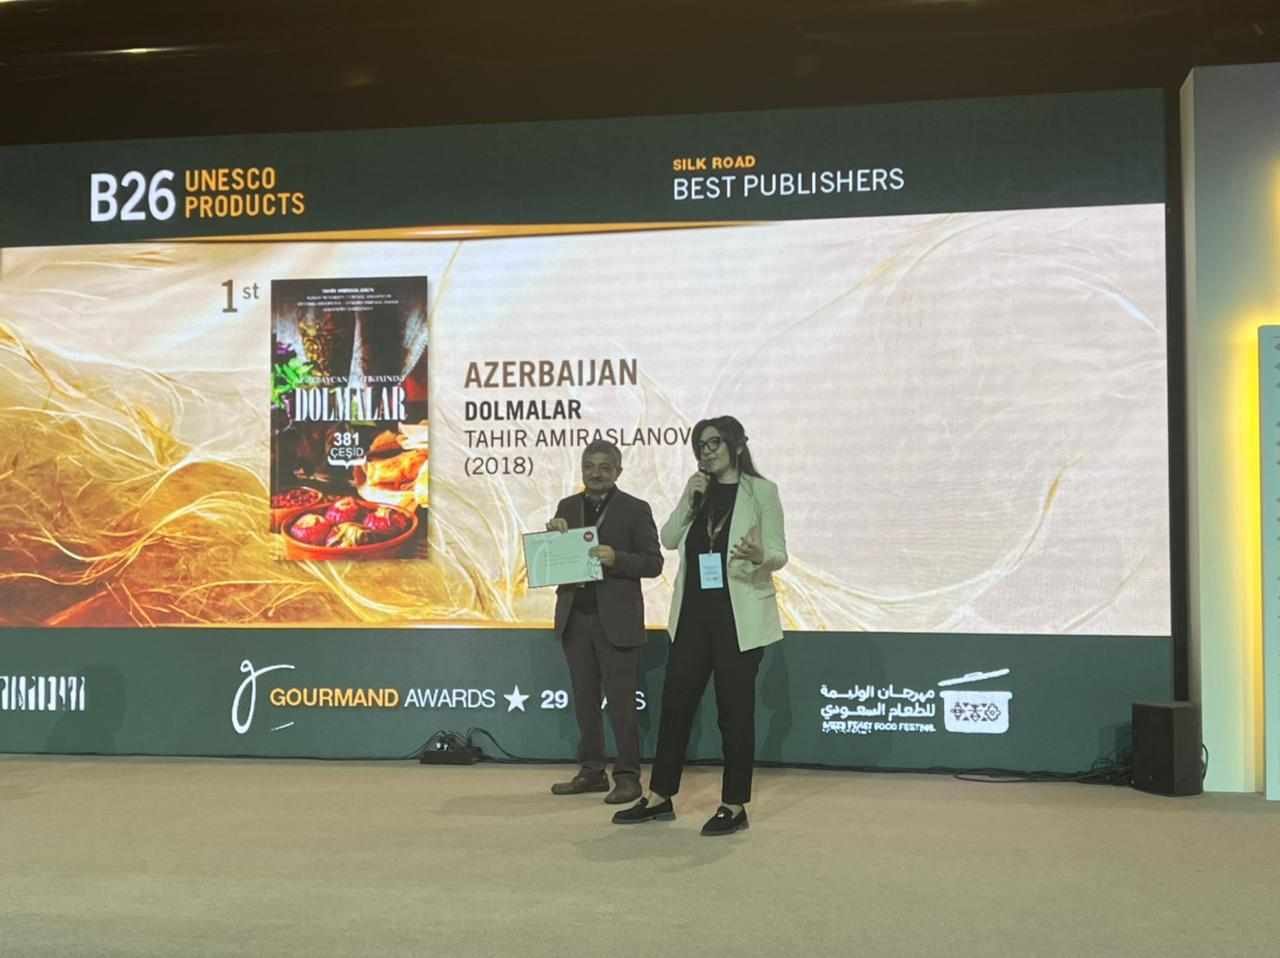 Азербайджанское издание о долме отмечено в Эр-Рияде наградой "Лучшая кулинарная книга за последние 25 лет" (ФОТО)